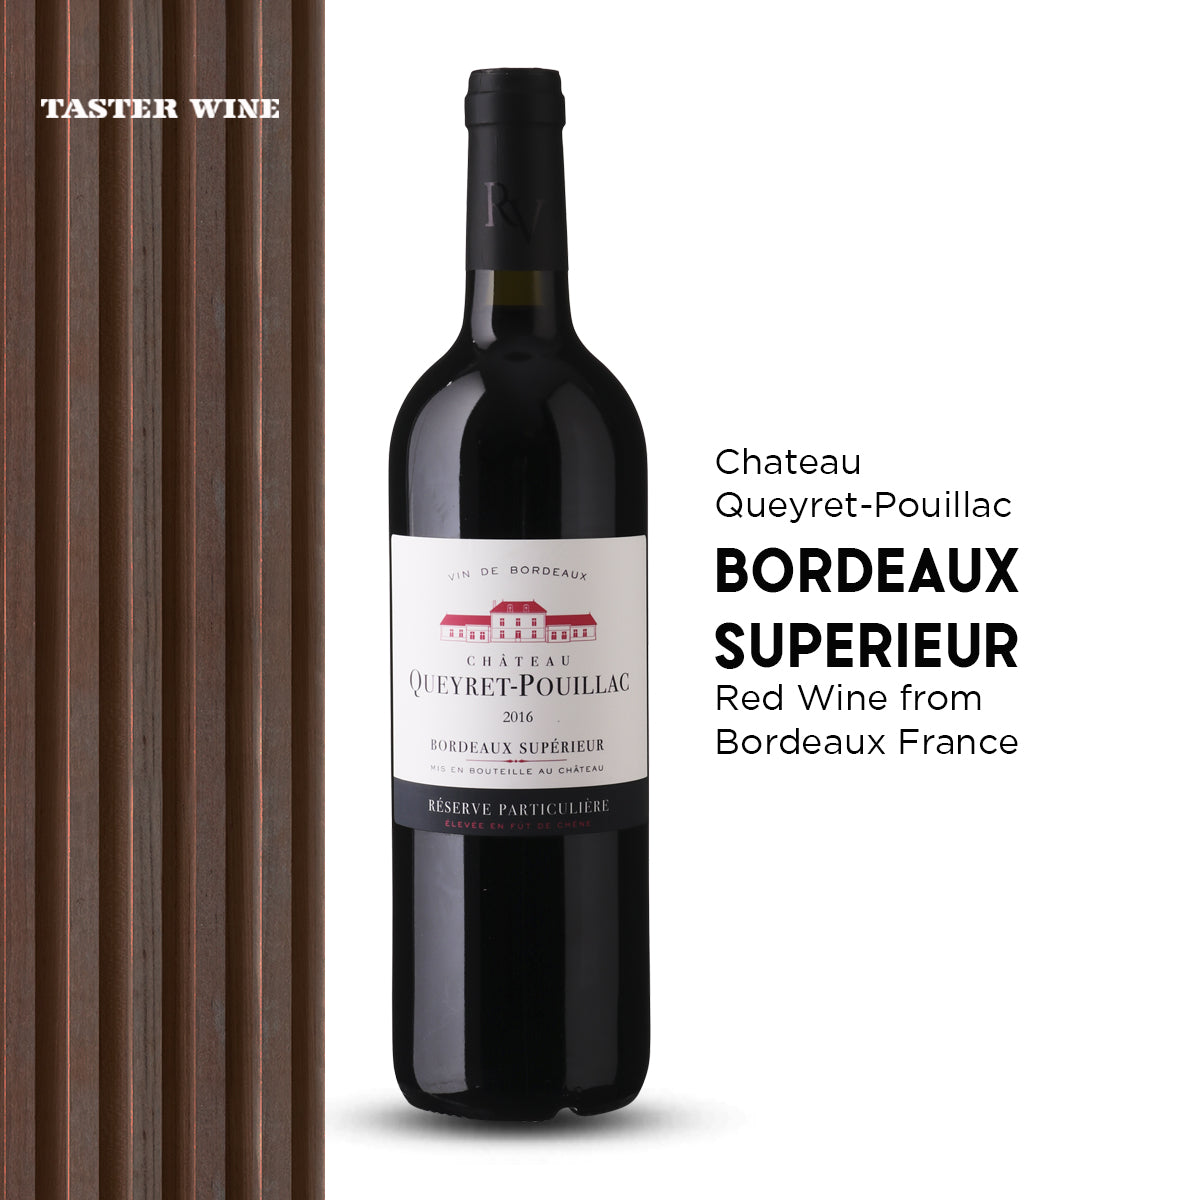 Chateau Queyret-Pouillac Bordeaux Superior Reserve Particuliere 2016 - Bloom Concept